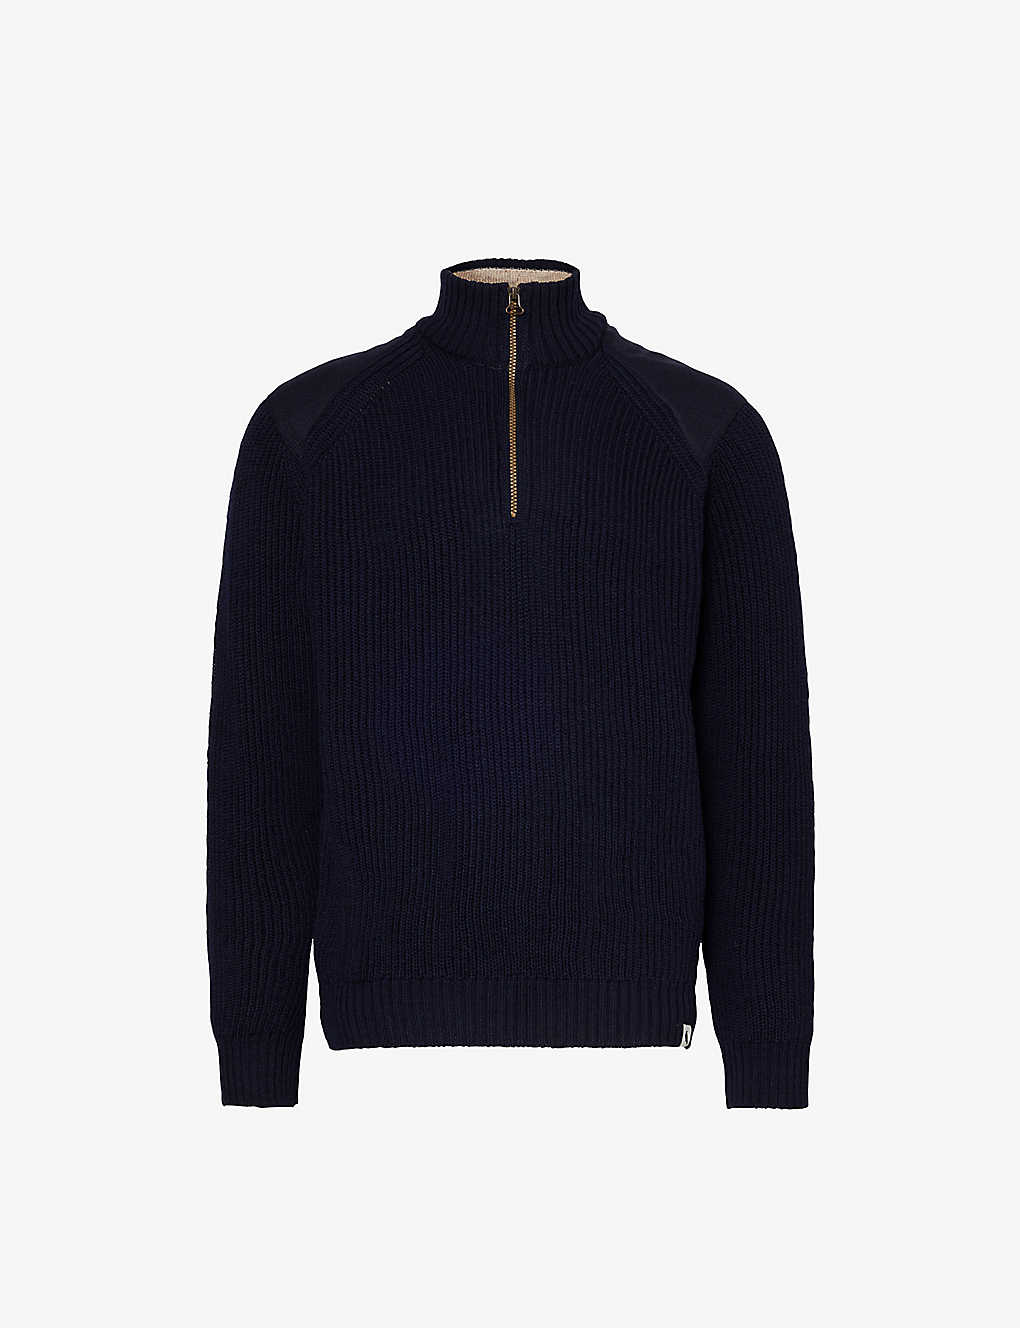 Peregrine Mens Navy Foxton Half-zip Funnel-neck Wool Sweatshirt